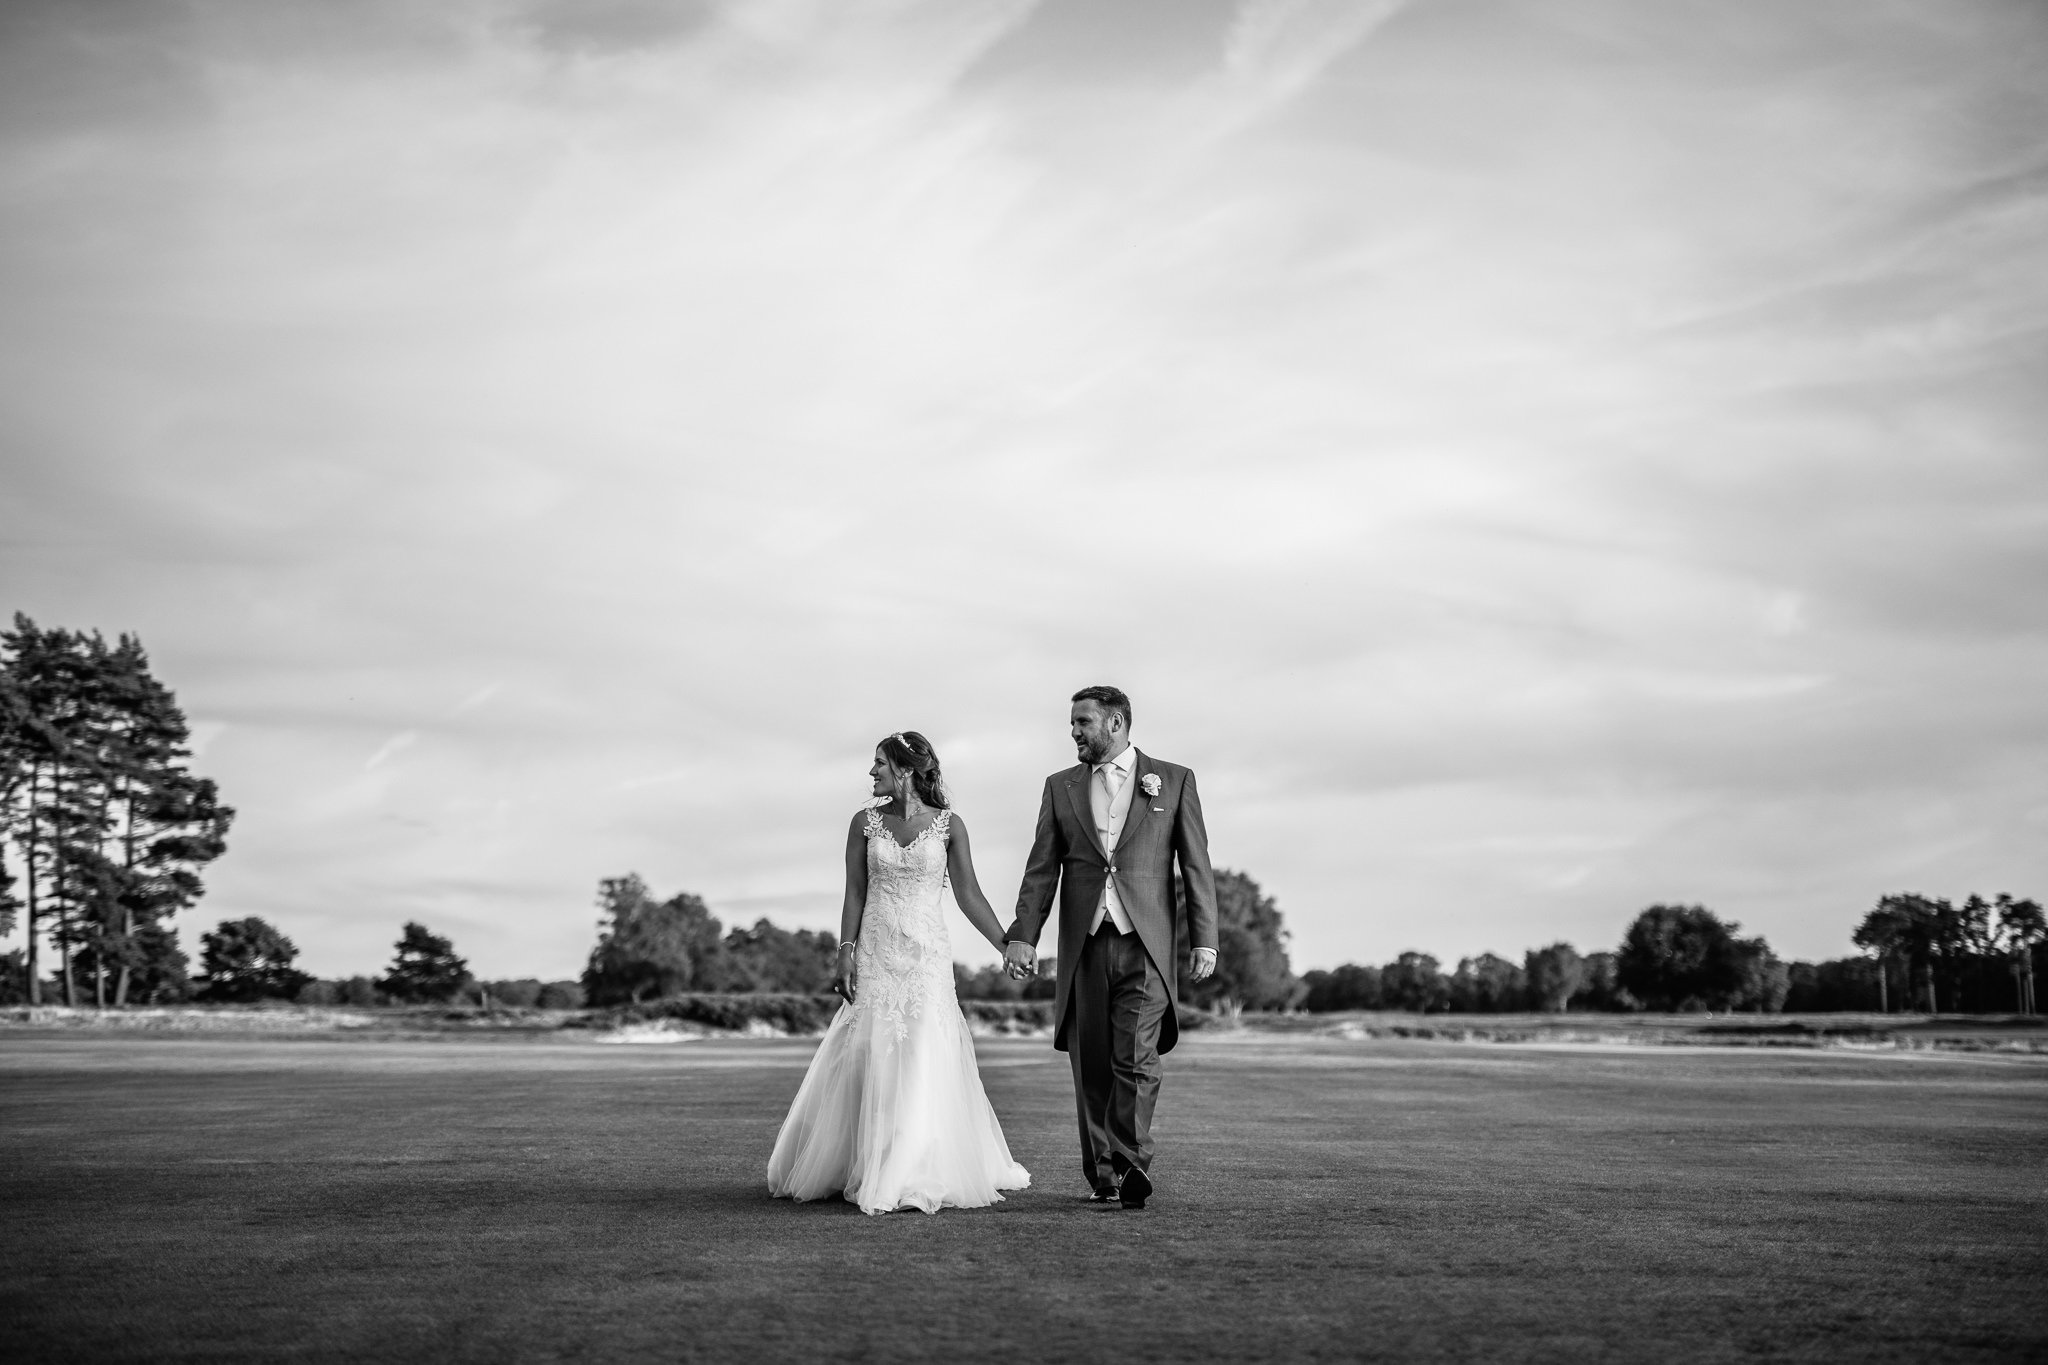  Bride and Groom on their wedding day  at Walton Heath Golf Club Surrey 